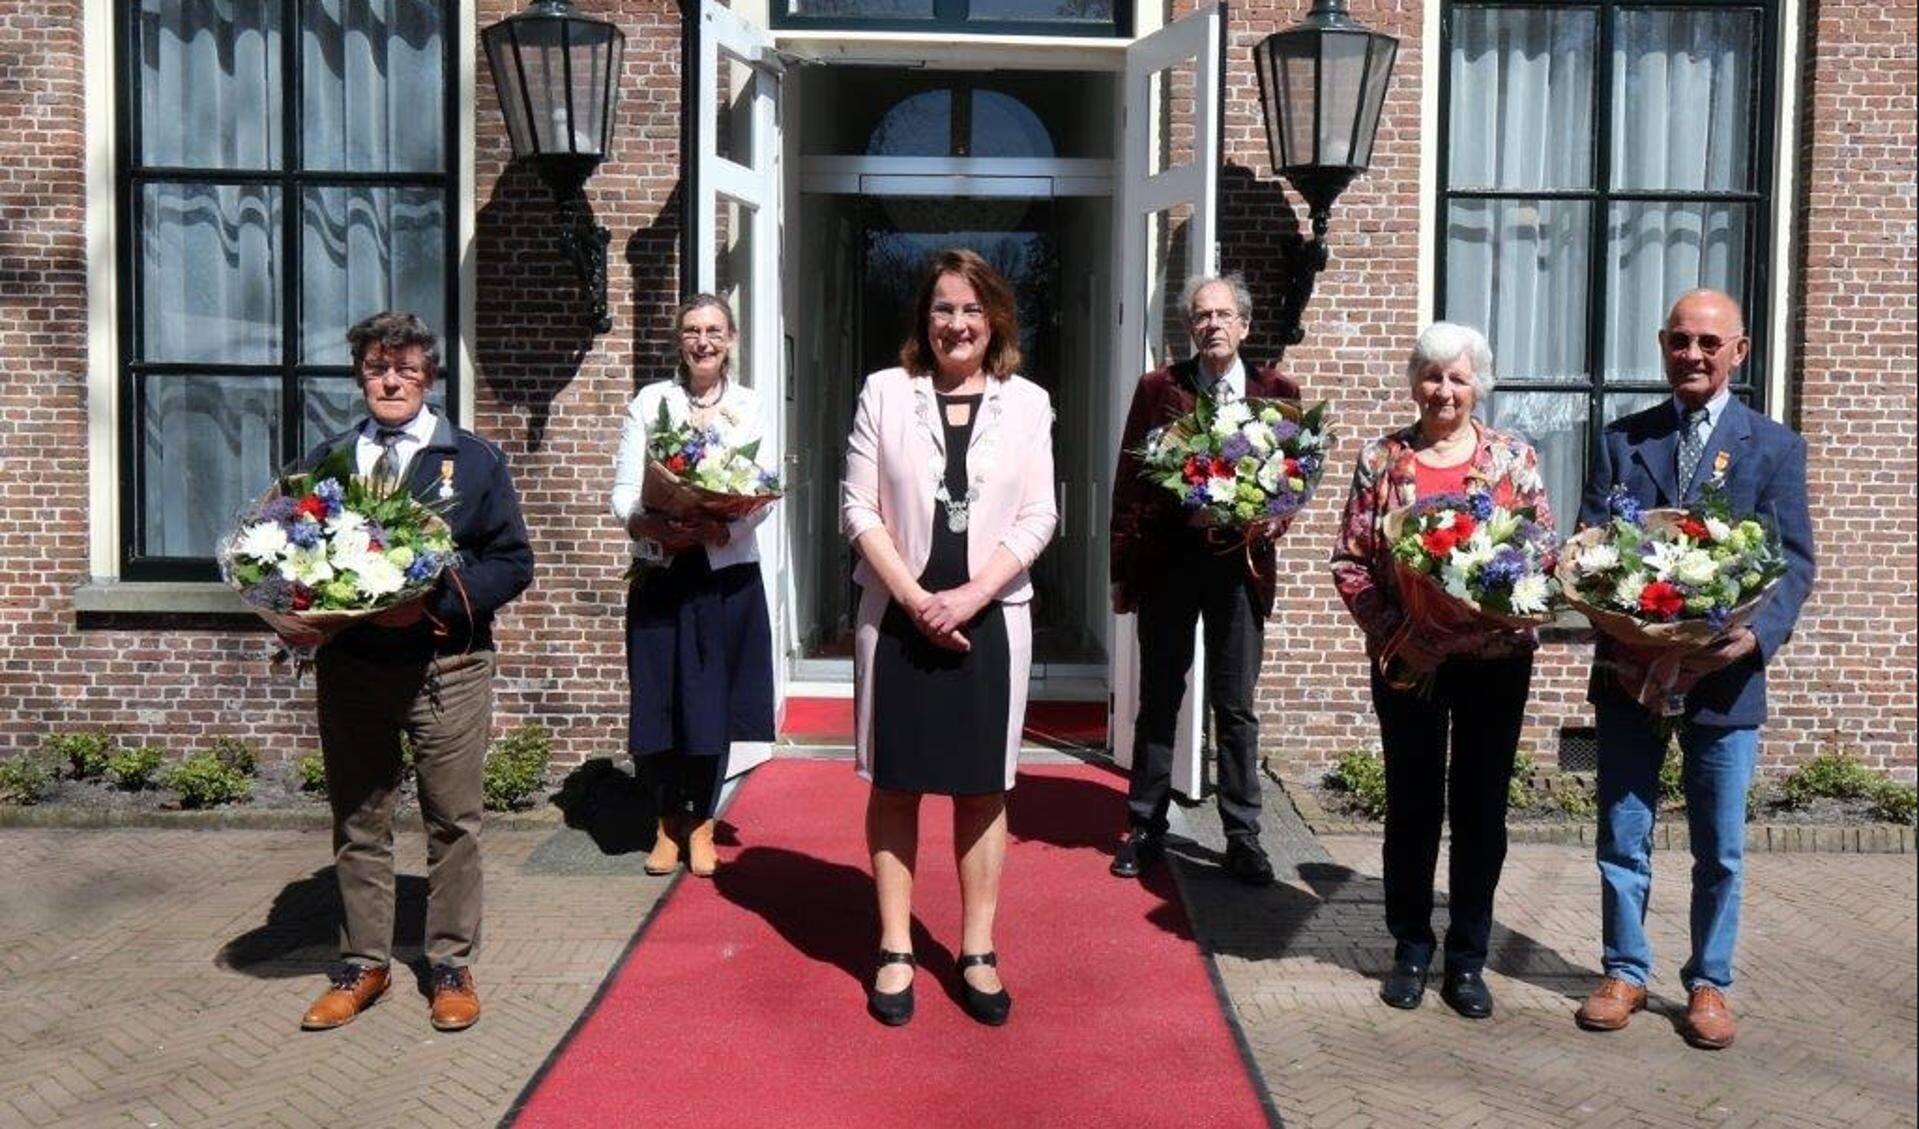 Luitzen de Vries, Henk Modderman en Sijanda Jelsma uit Beetsterzwaag en het
echtpaar Cor en Ria Hoekmeijer uit Gorredijk, met in het midden burgemeester Ellen van Selm.